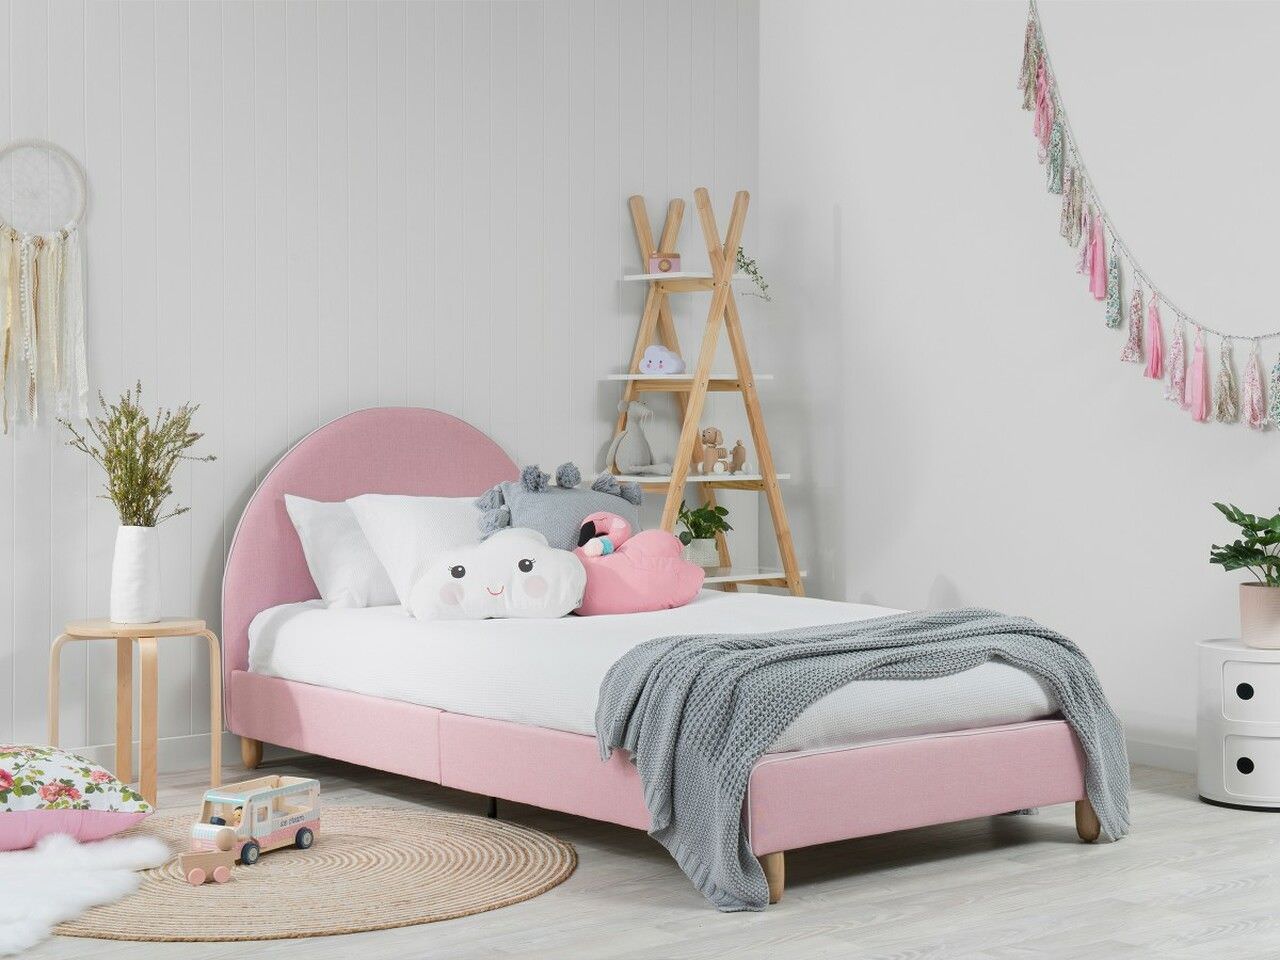 Giường 1m2 đế thấp bọc vải màu hồng nữ tính